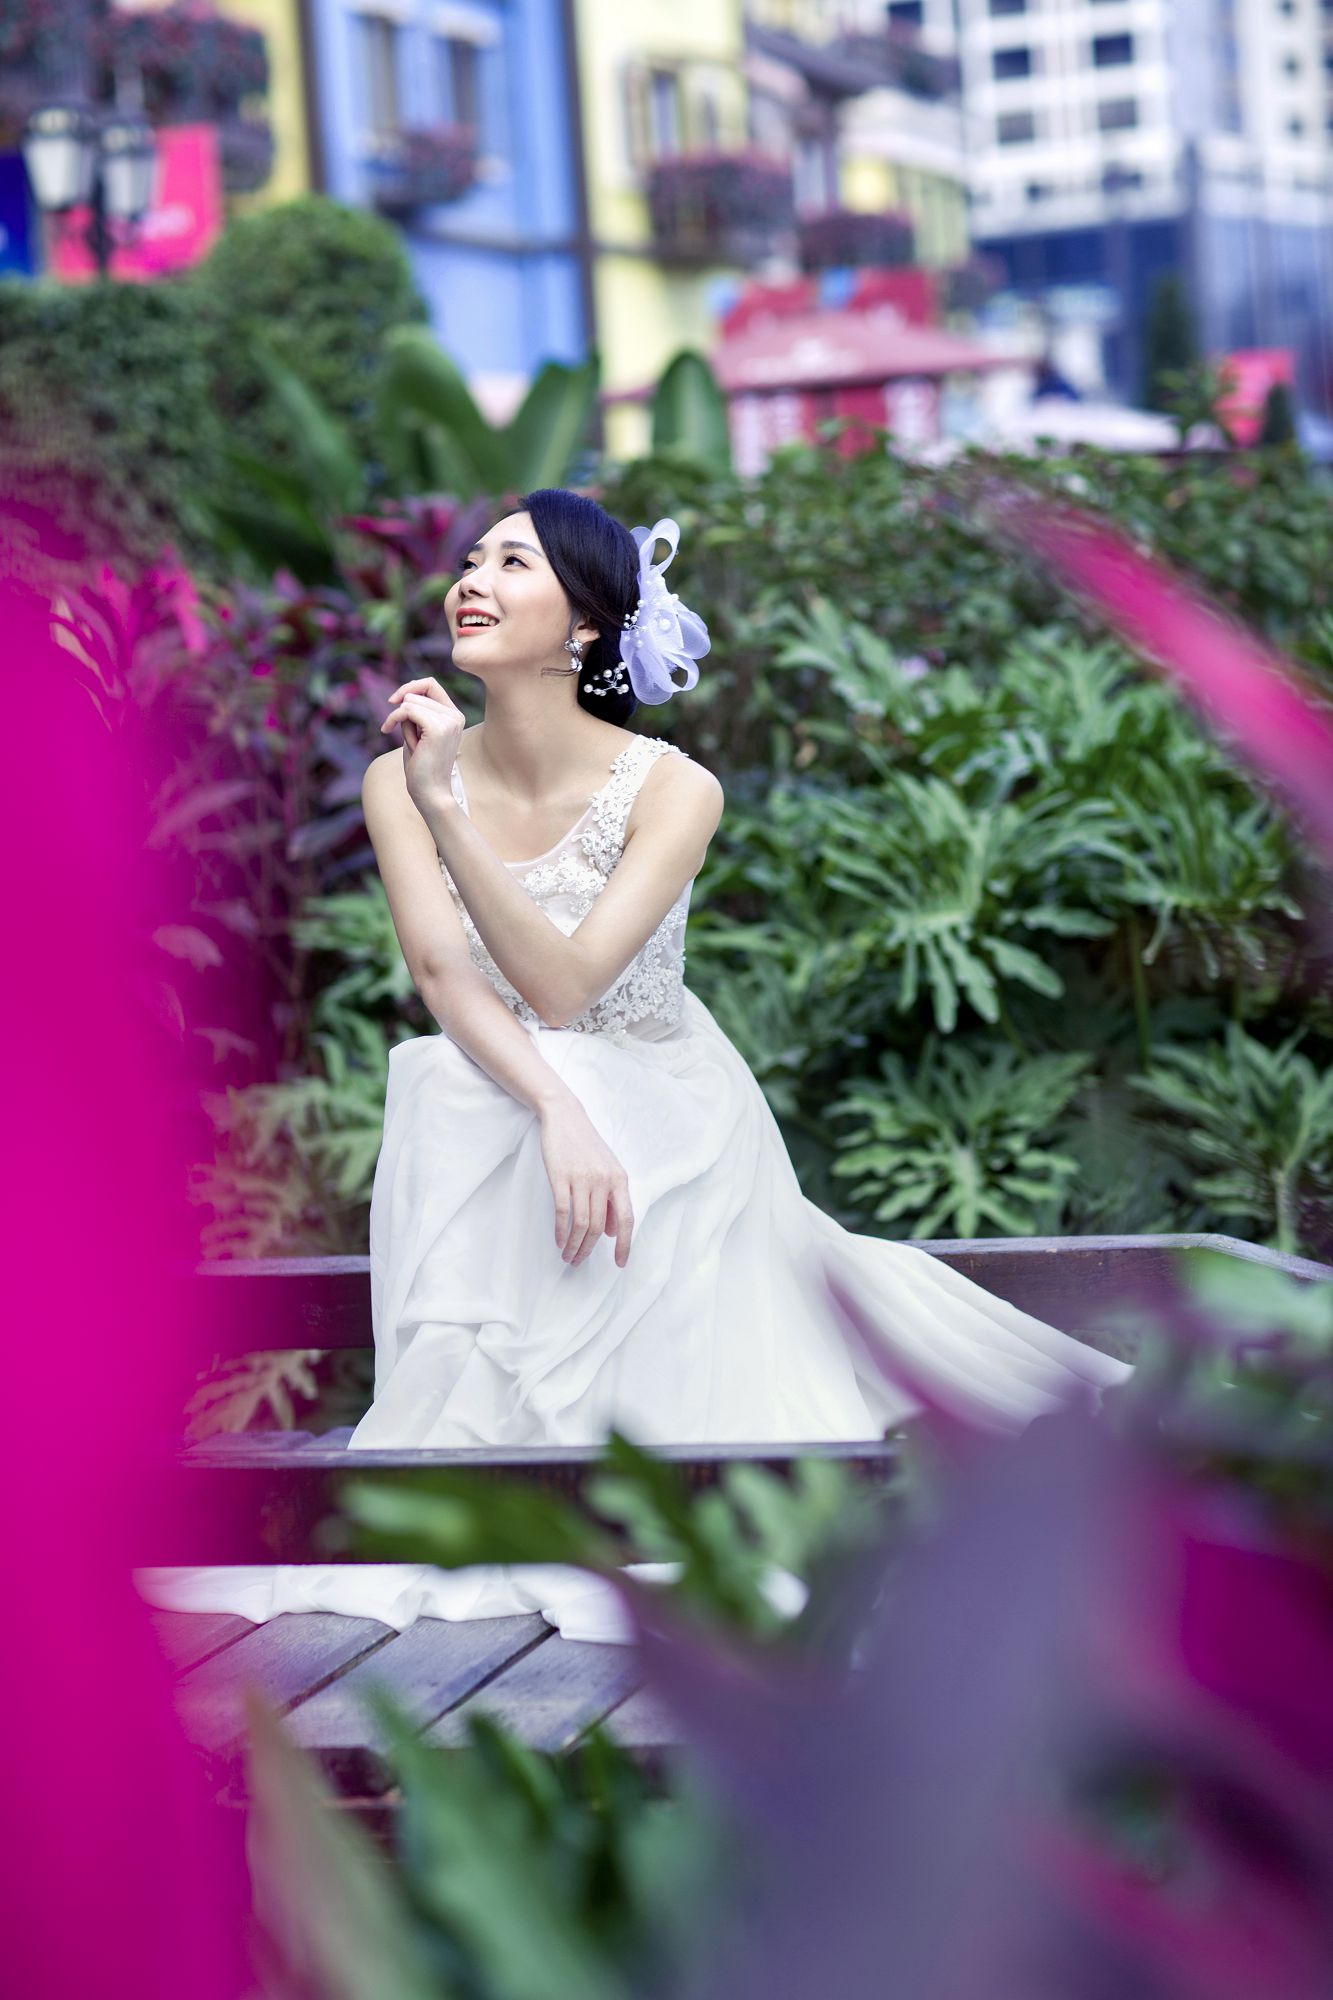 2017年7月广州结婚照,佛山婚纱照,婚纱照图片